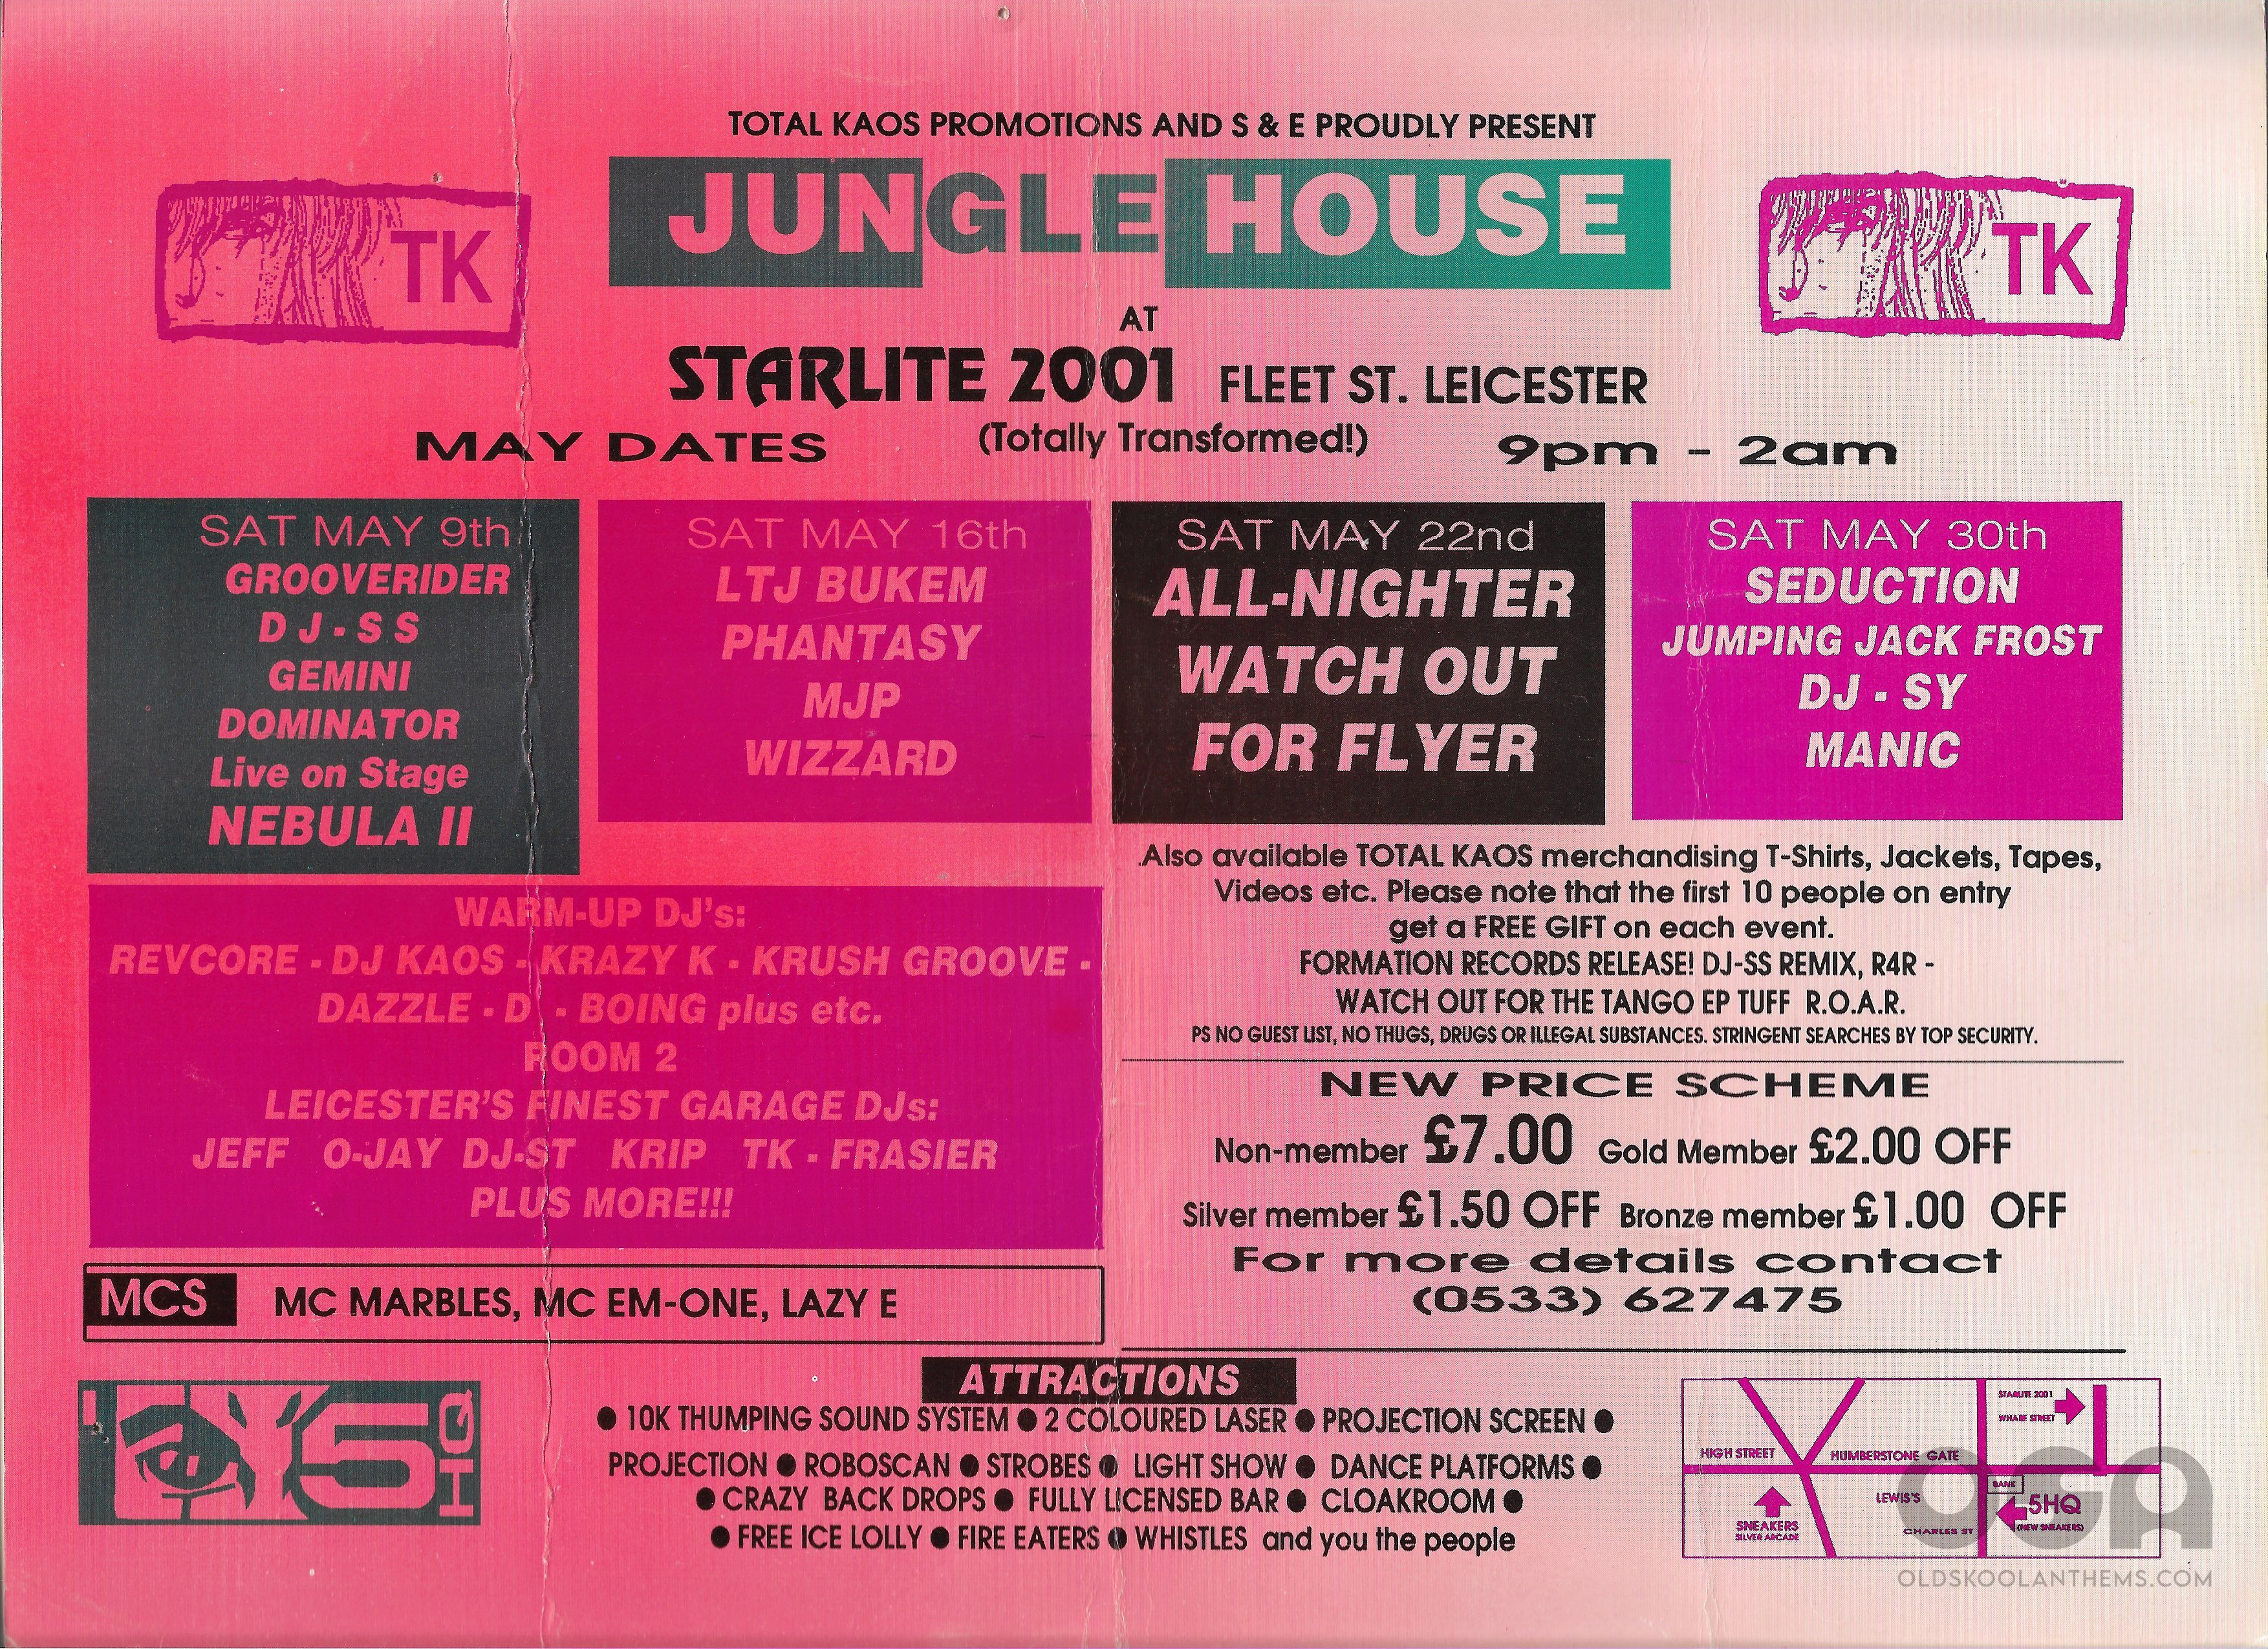 Total Kaos - Presents Jungle House - May 9th - May 30th.jpg